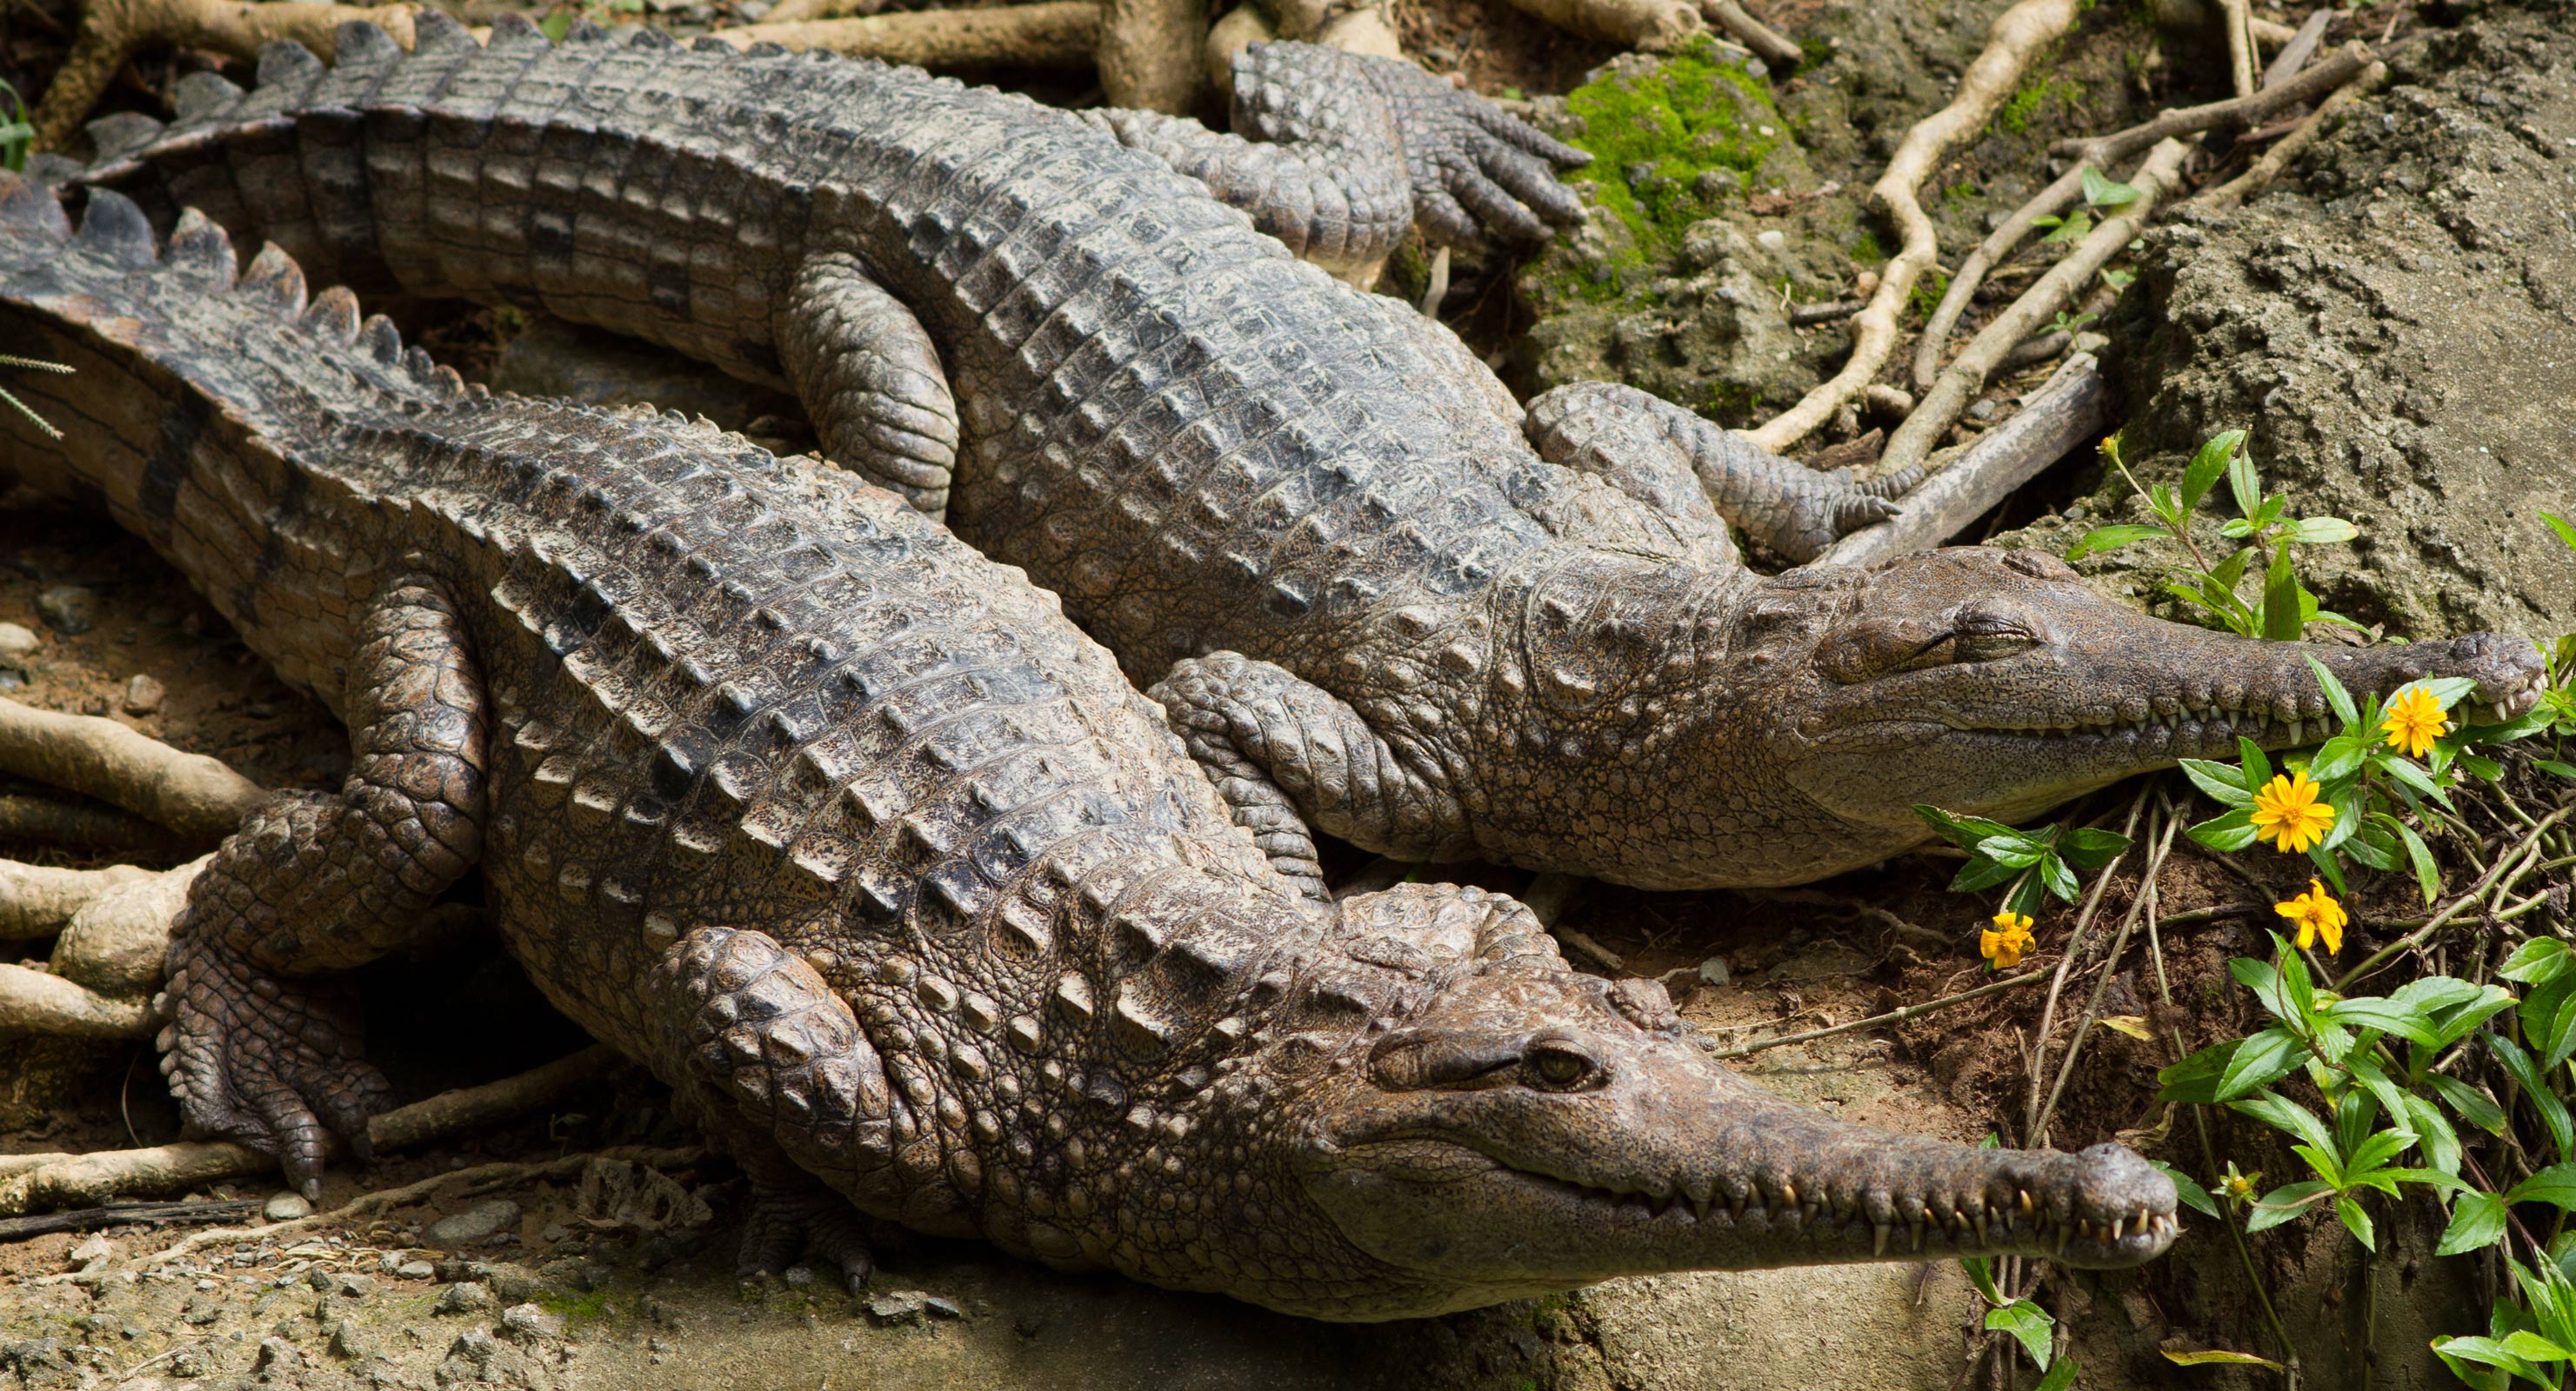 Freshwater crocodiles